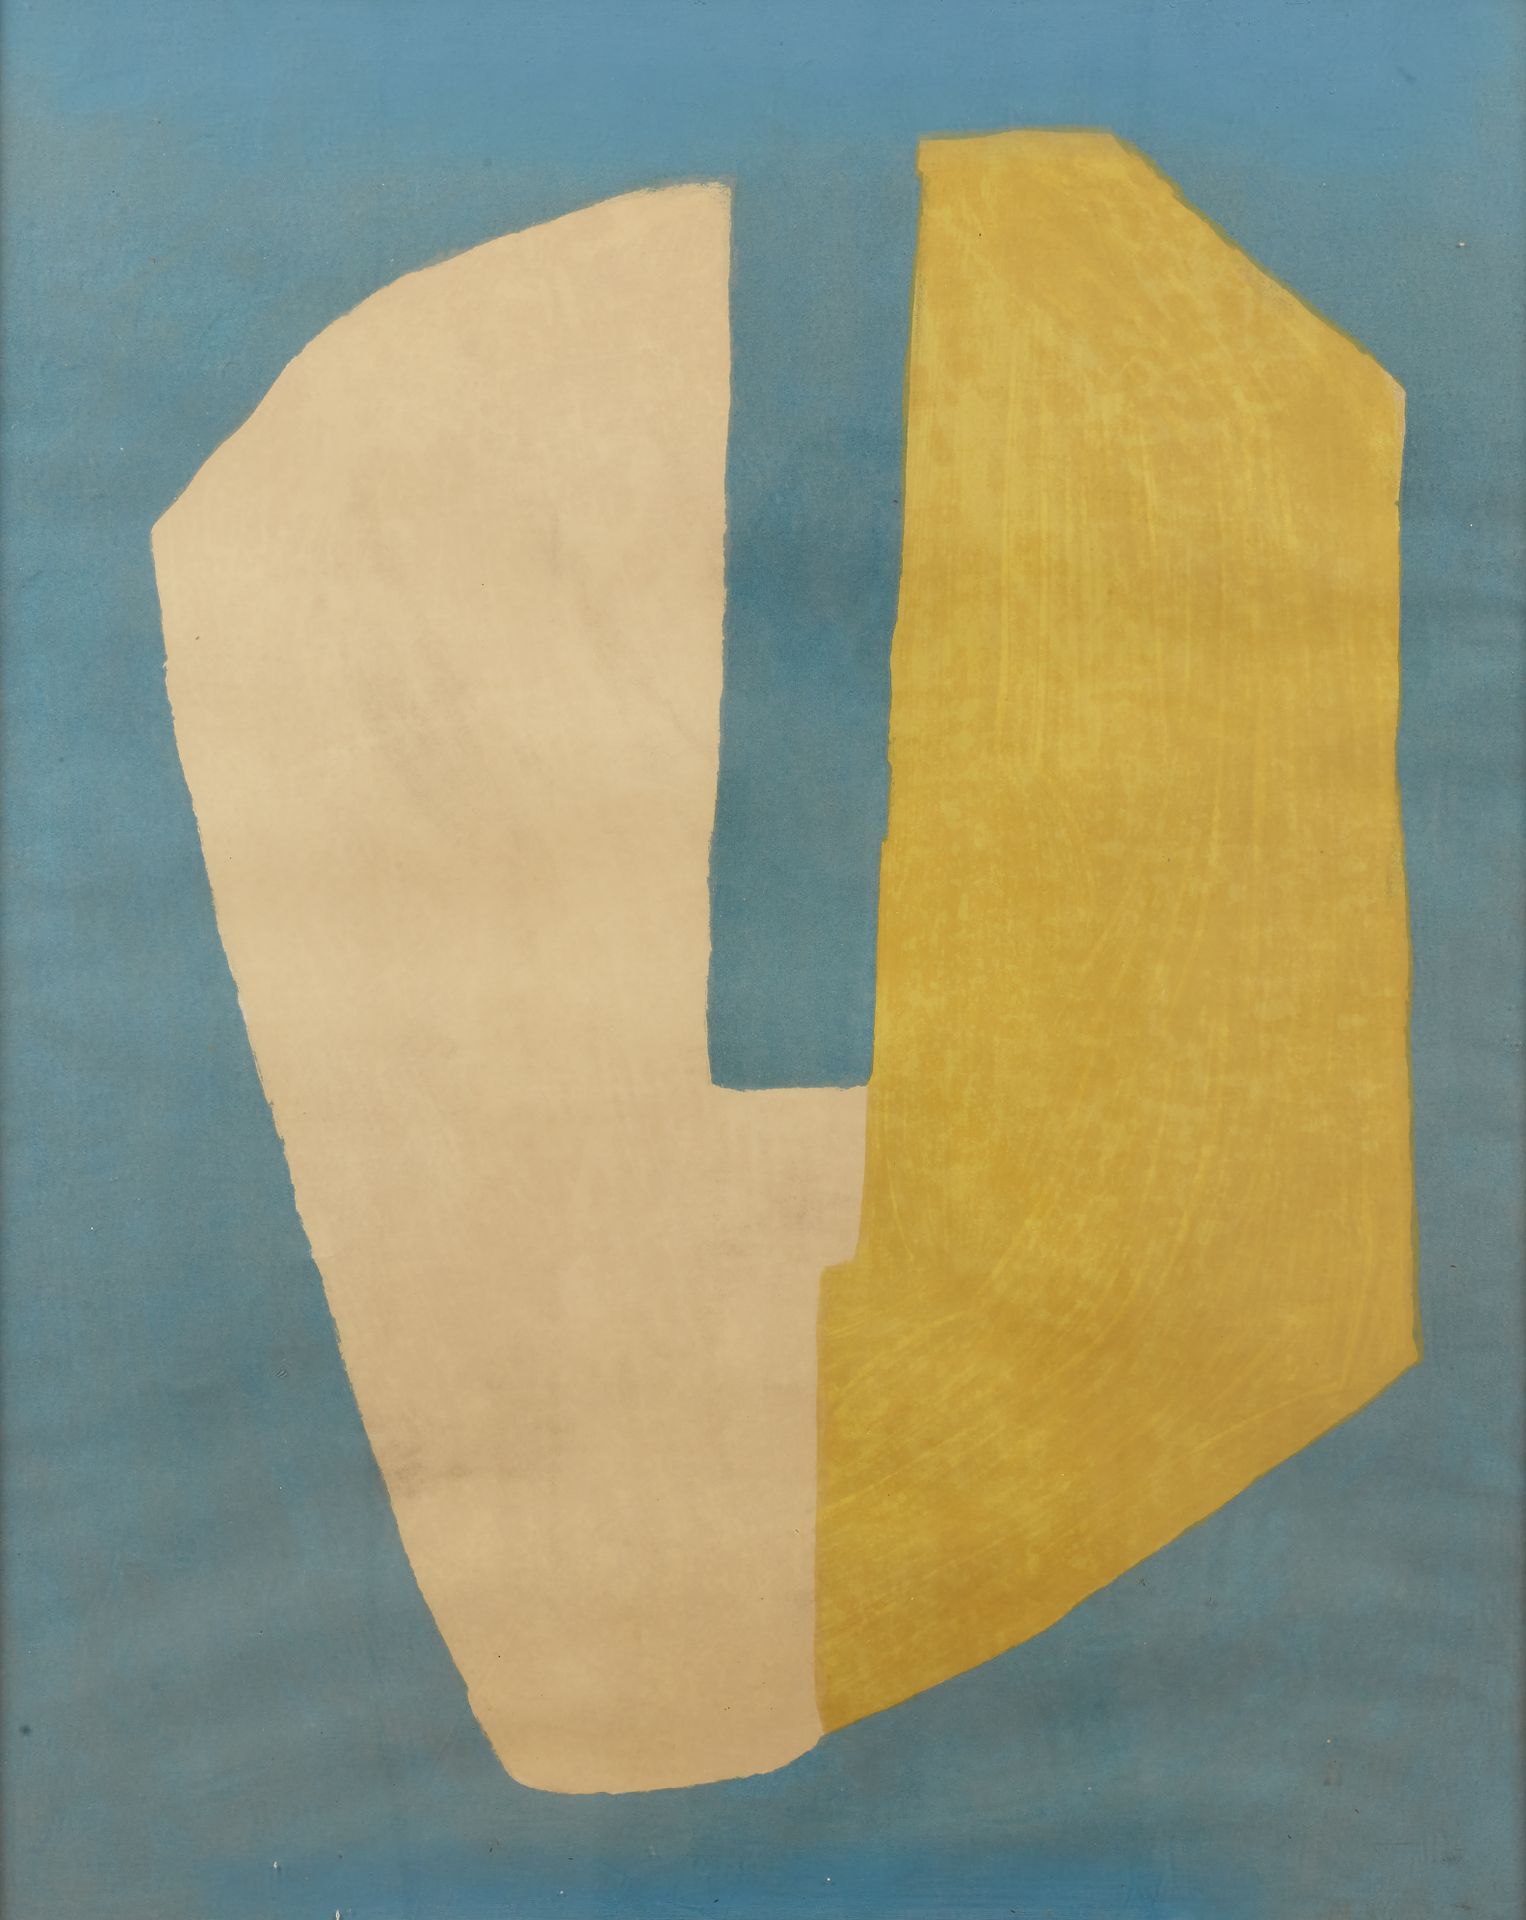 Null Nach Serge POLIAKOFF (1900-1969)
Gelbe und blaue Komposition, 1968 
Lithogr&hellip;